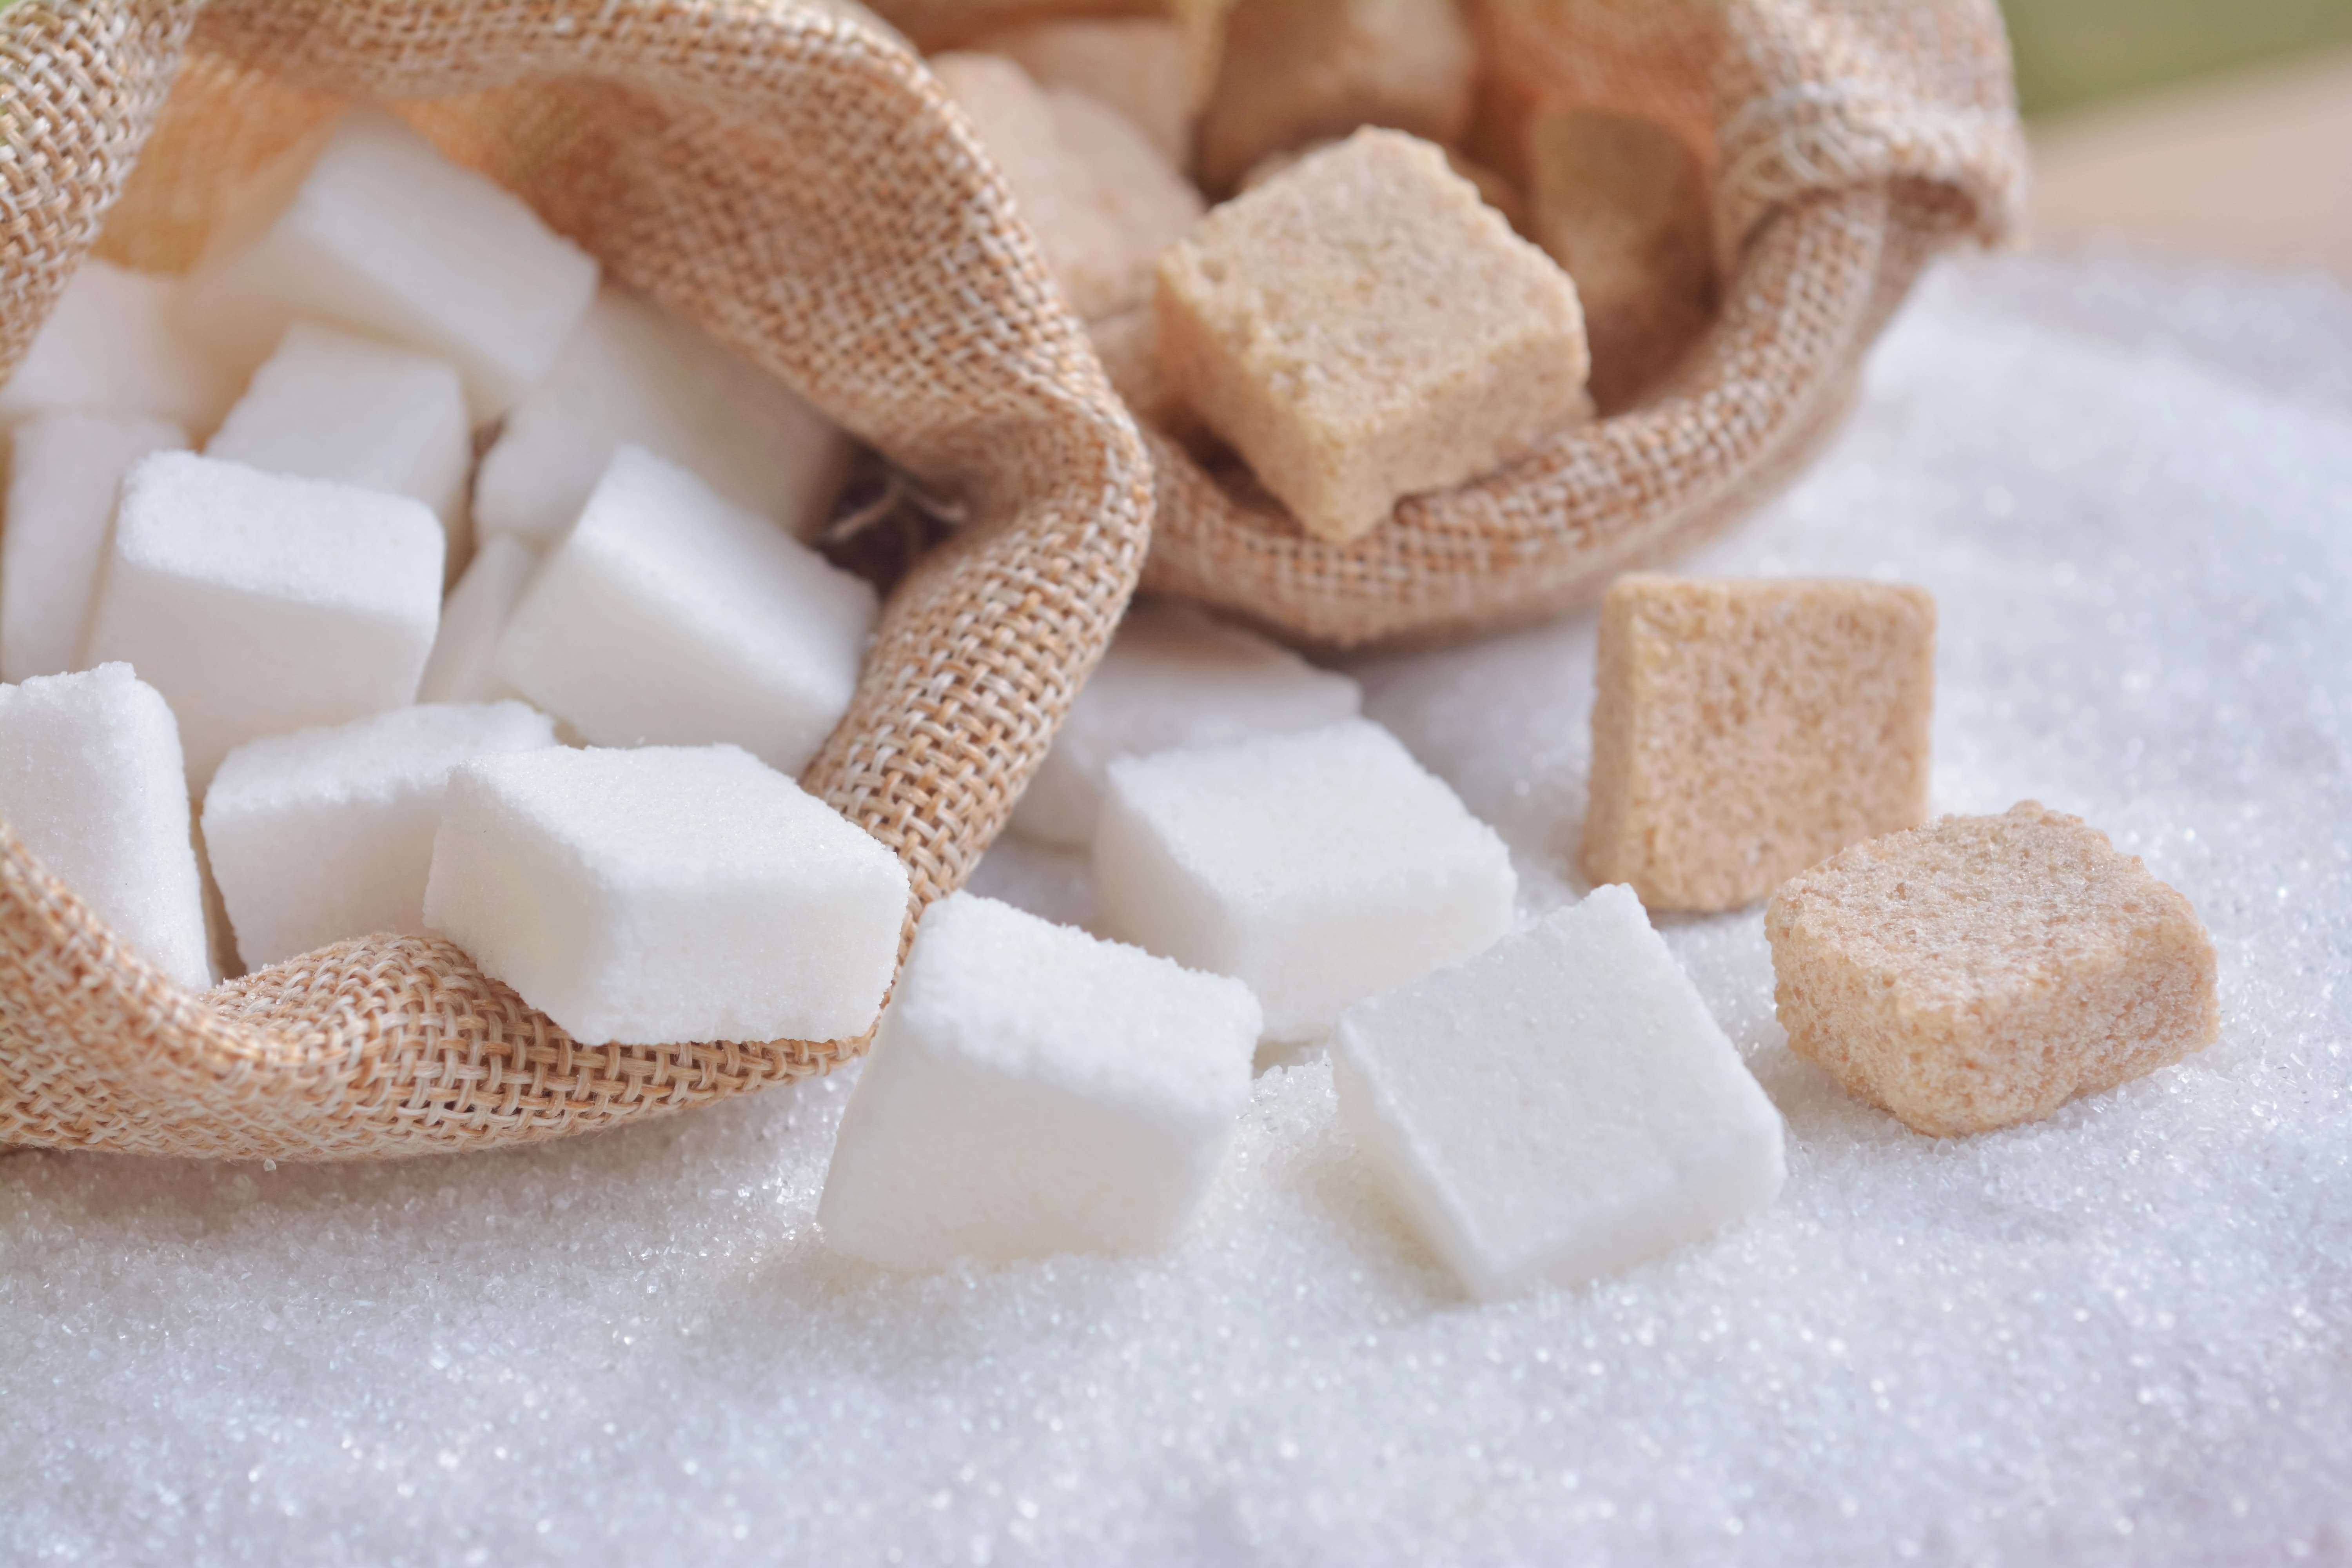 Казахстанские сахарные заводы вынуждены простаивать из-за недостатка сырья